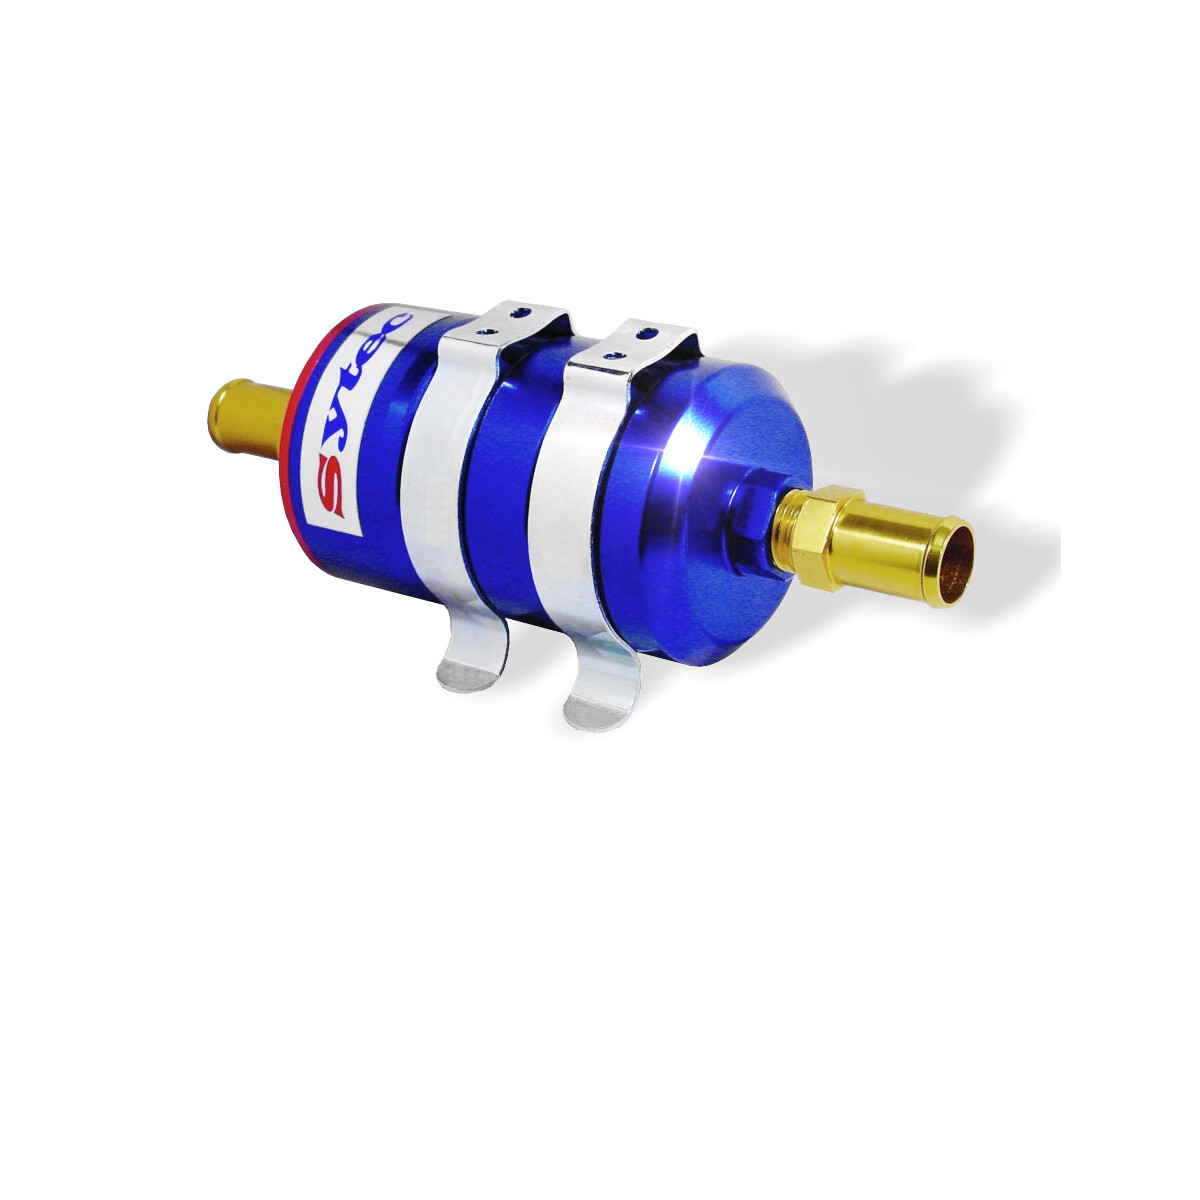 https://www.maxrpm.de/media/image/product/178/lg/motorsport-benzinfilter-kraftstofffilter-anschluesse-8mm-8mm-universell-einsetzbar-sytec-bullet-a1-blue.jpg